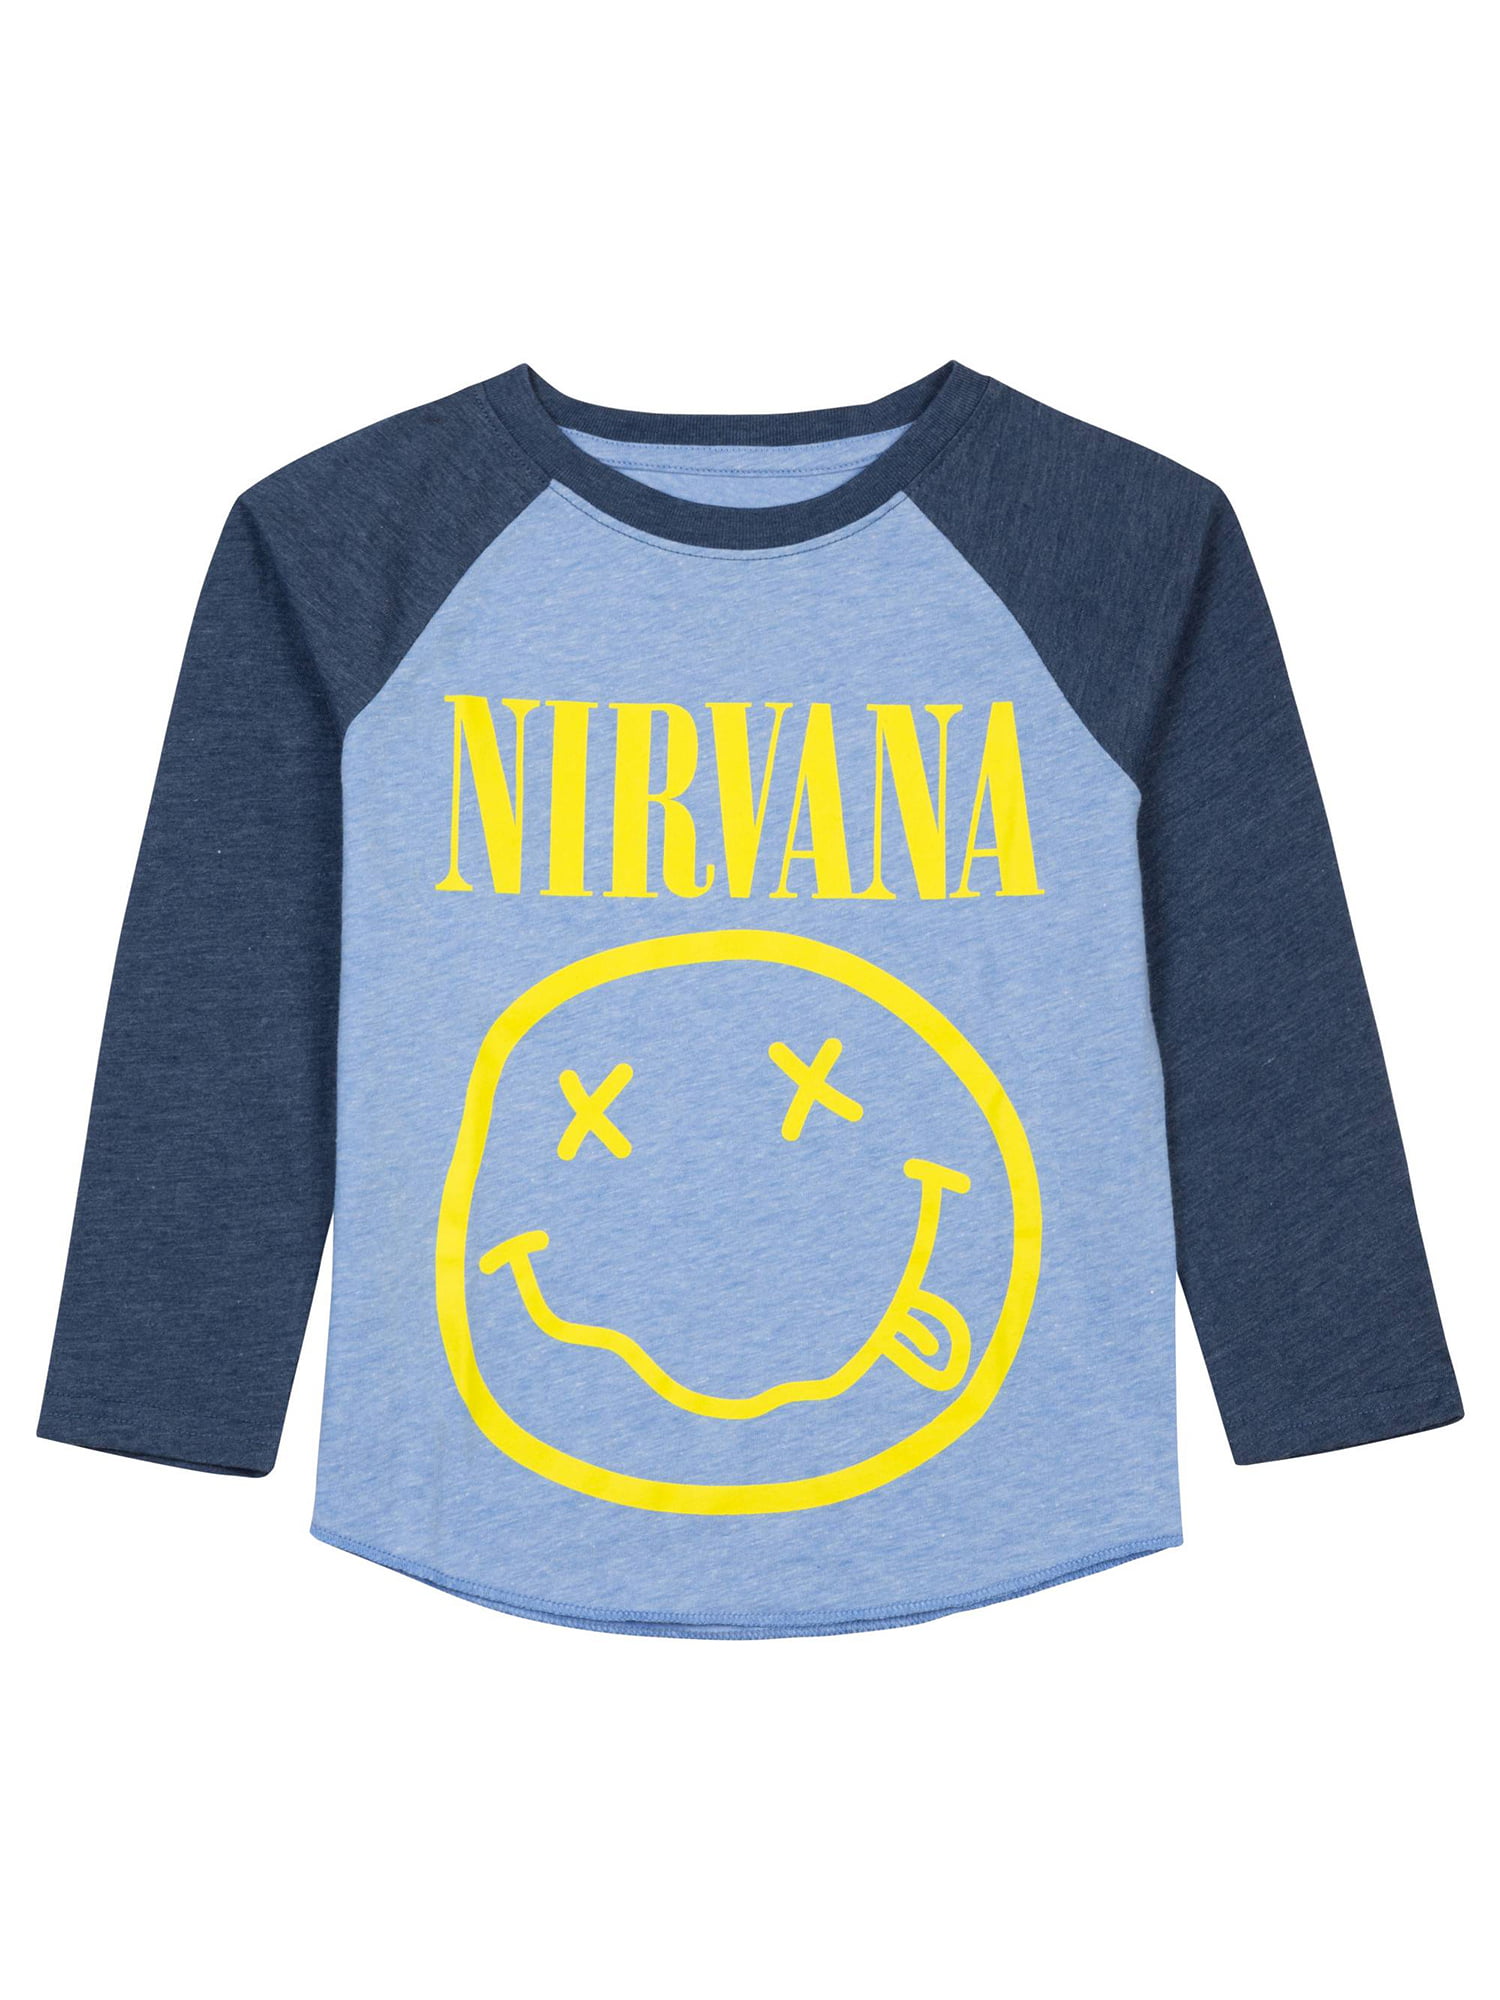 nirvana t shirt toddler